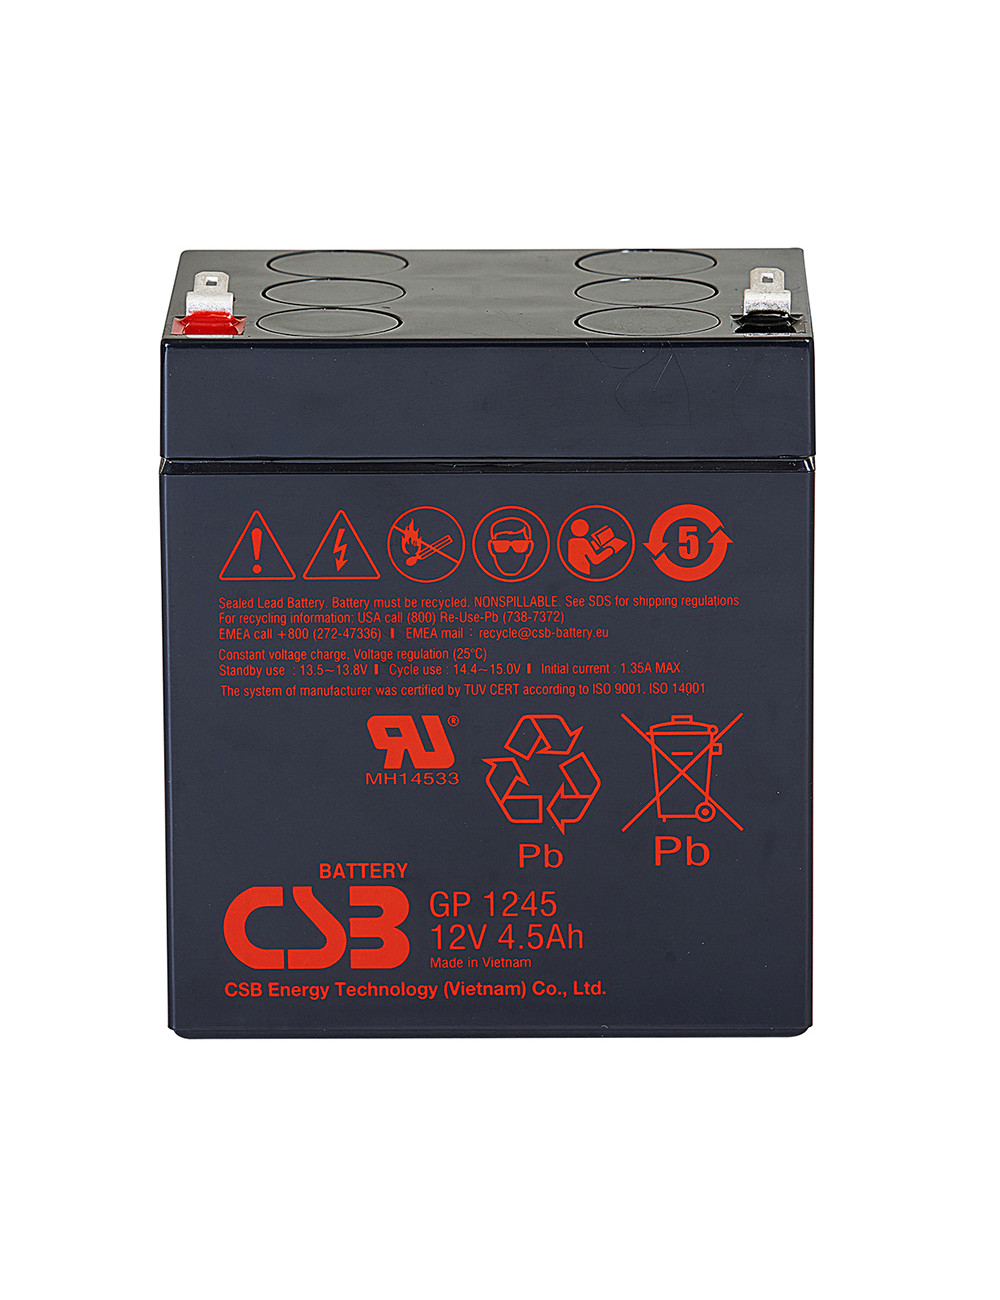 Bateria para escala ou balançal de 12V 4,5Ah C20 CSB GP1245 - 1